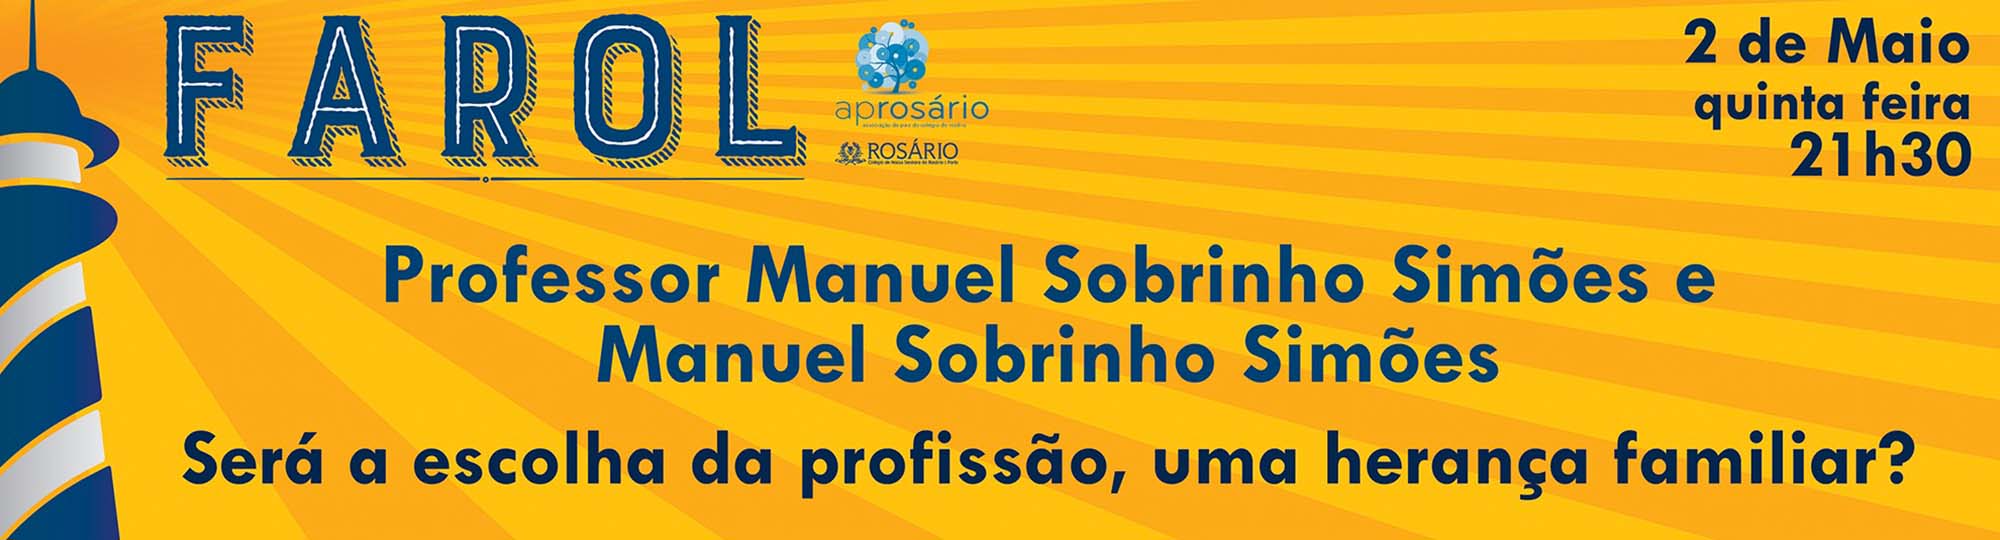 Professor Manuel Sobrinho Simões no Colégio
